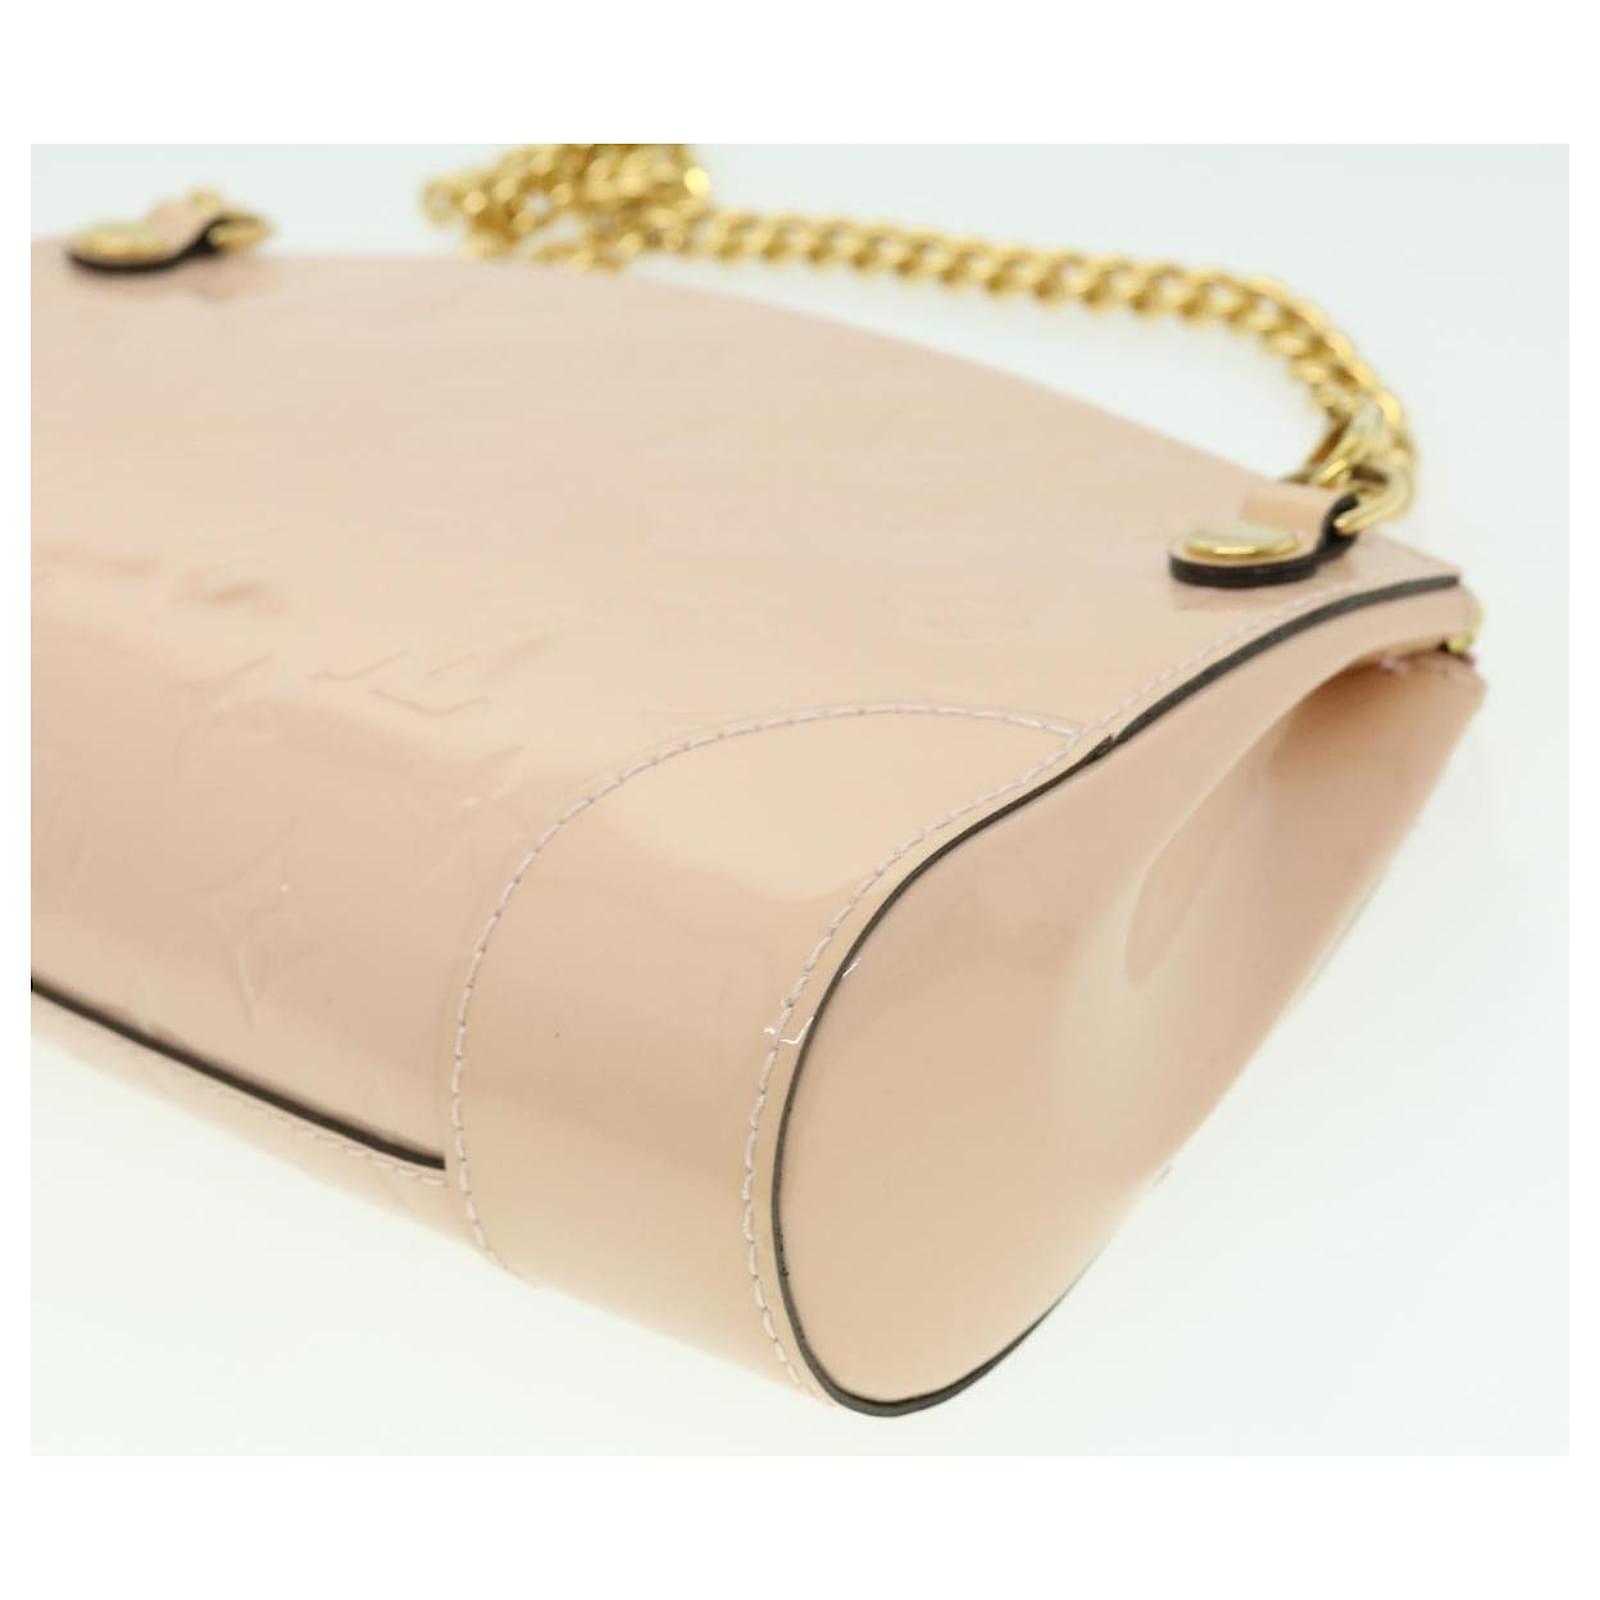 LOUIS VUITTON Vernis Santa monica clutch Shoulder Bag Pink M50410